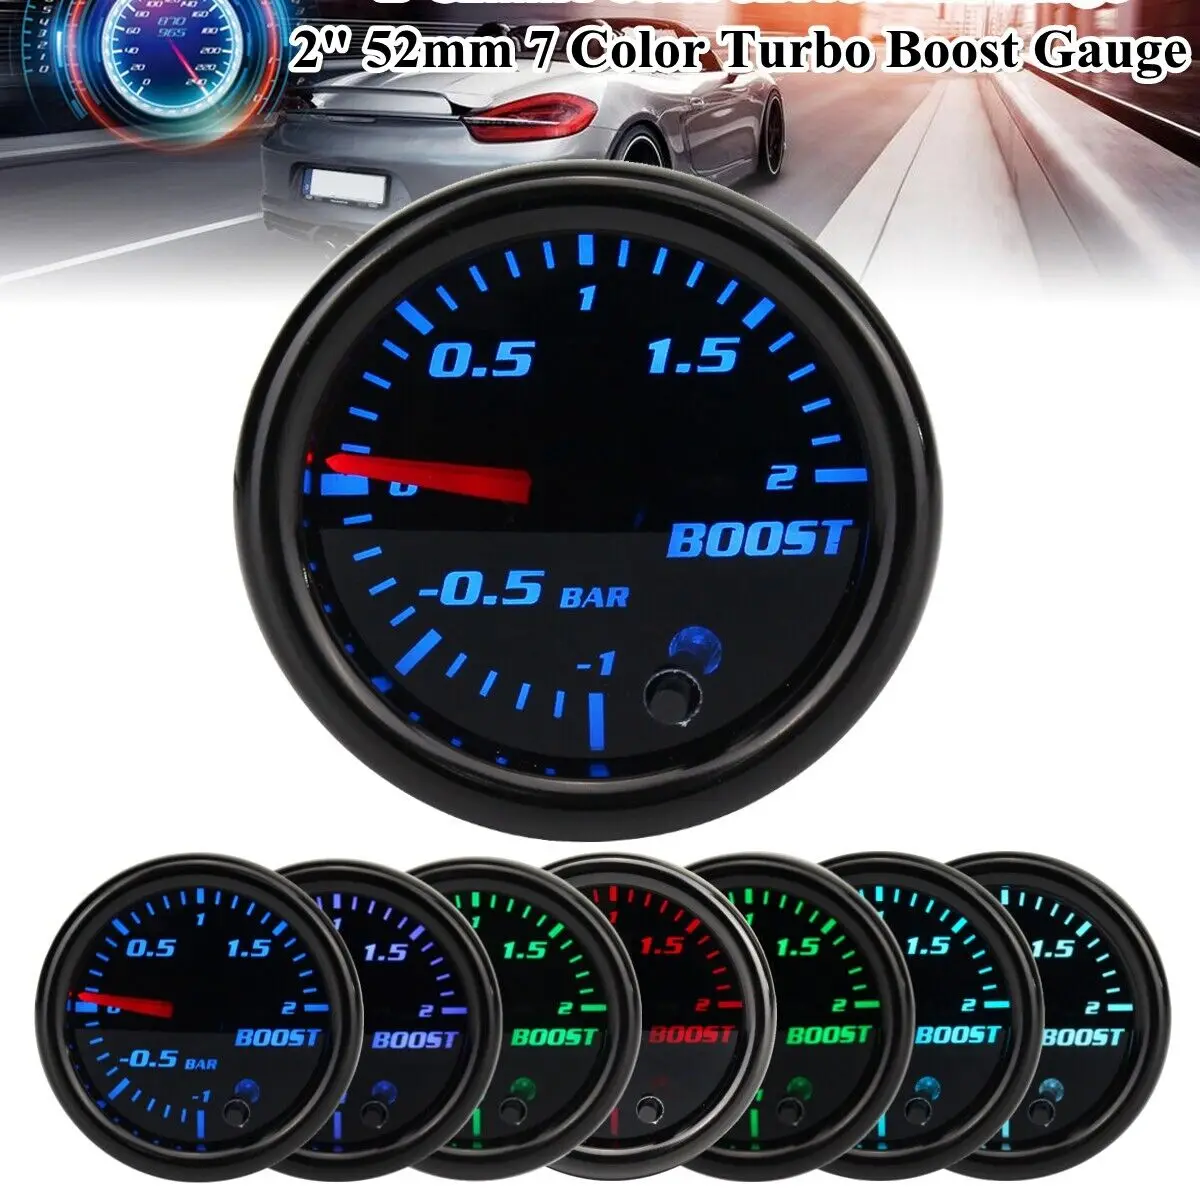 

Универсальный автомобильный измеритель давления Turbo Boost, вакуумный прибор для измерения давления, 2 дюйма, 52 мм, диапазон измерений-1 ~ 2 бар, 12 В, С дисплеем 7 цветов